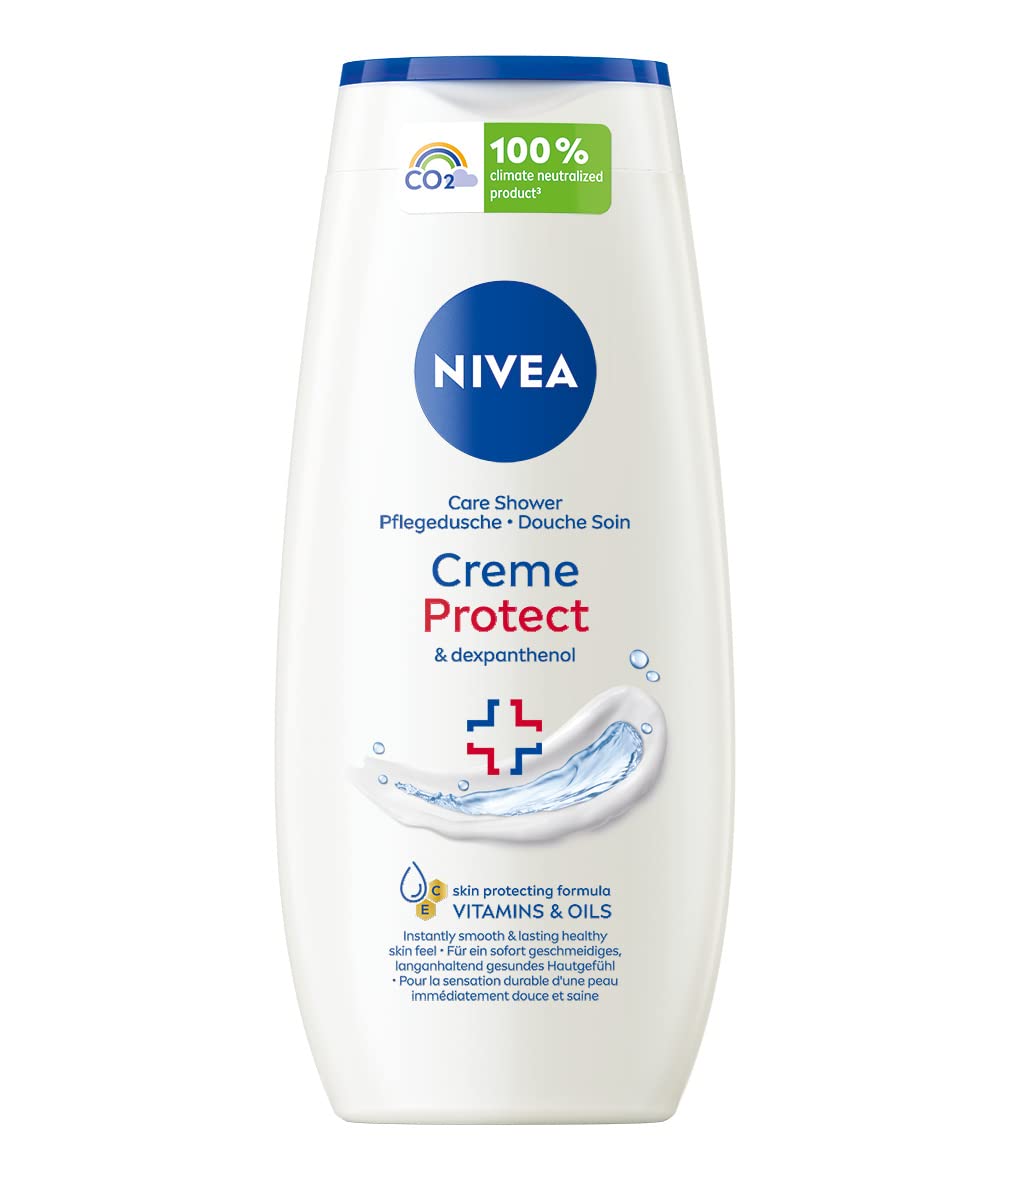 NIVEA Creme Protect Pflegedusche (250 ml), Duschgel mit Vitaminen und wertvollen Ölen, Cremedusche mit Dexpanthenol für trockene und empfindliche Haut, ‎cream